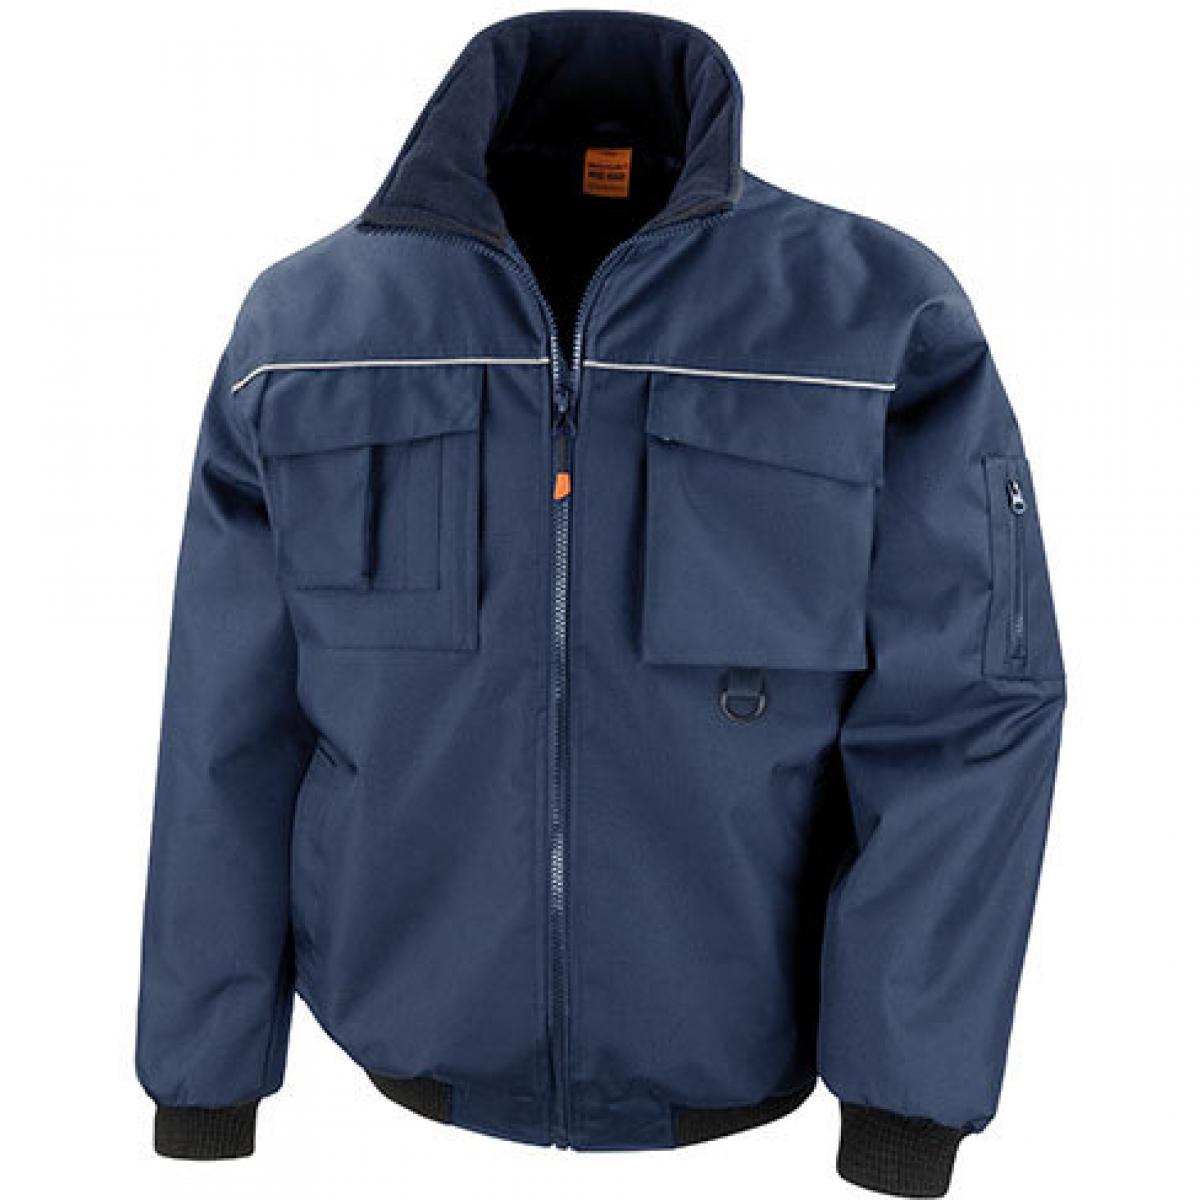 Hersteller: Result WORK-GUARD Herstellernummer: R300X Artikelbezeichnung: Sabre Pilot Herren Workwear Arbeits Jacke Farbe: Navy